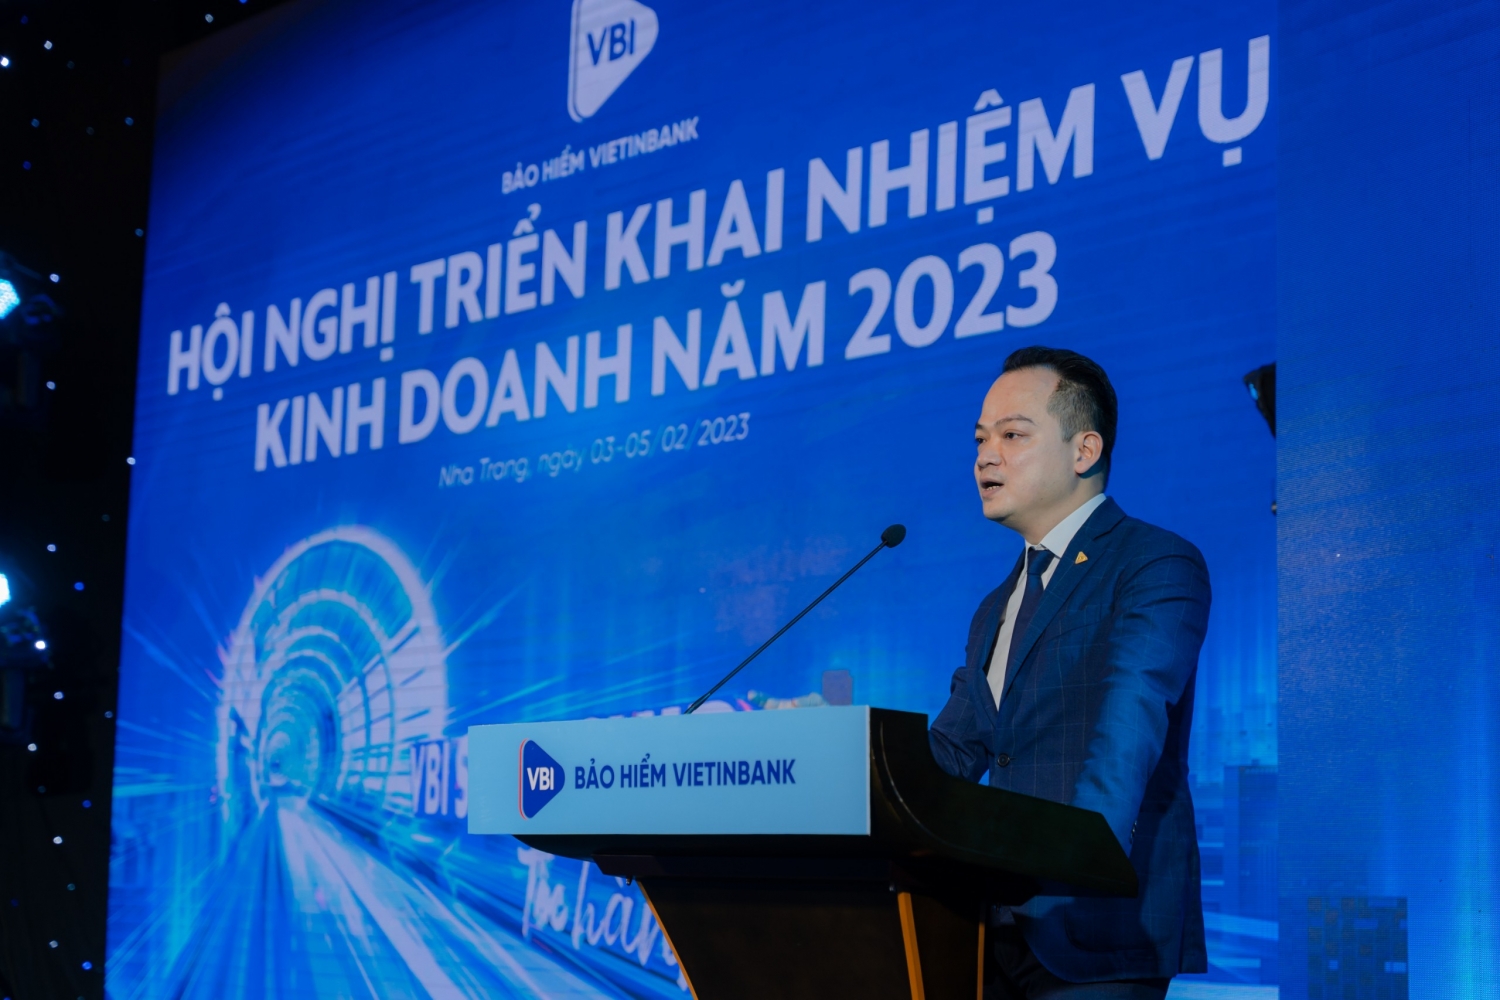 Bảo hiểm VietinBank hoàn thành xuất sắc kế hoạch kinh doanh 2022: Tốc độ tăng trưởng dẫn đầu thị trường